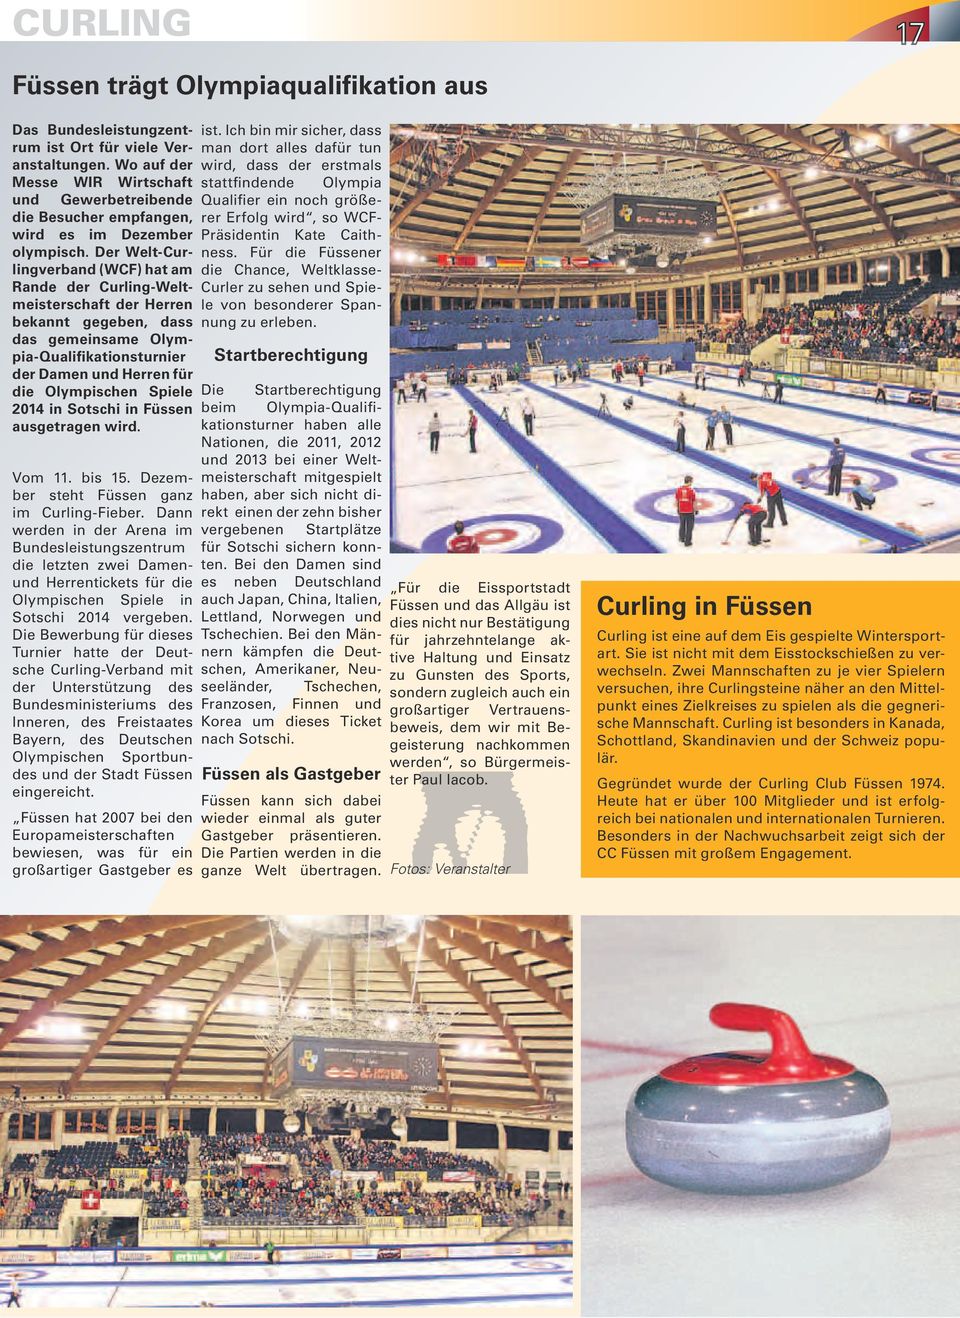 Der Welt-Curlingverband (WCF) hat am Rande der Curling-Weltmeisterschaft der Herren bekannt gegeben, dass das gemeinsame Olympia-Qualifikationsturnier der Damen und Herren für die Olympischen Spiele